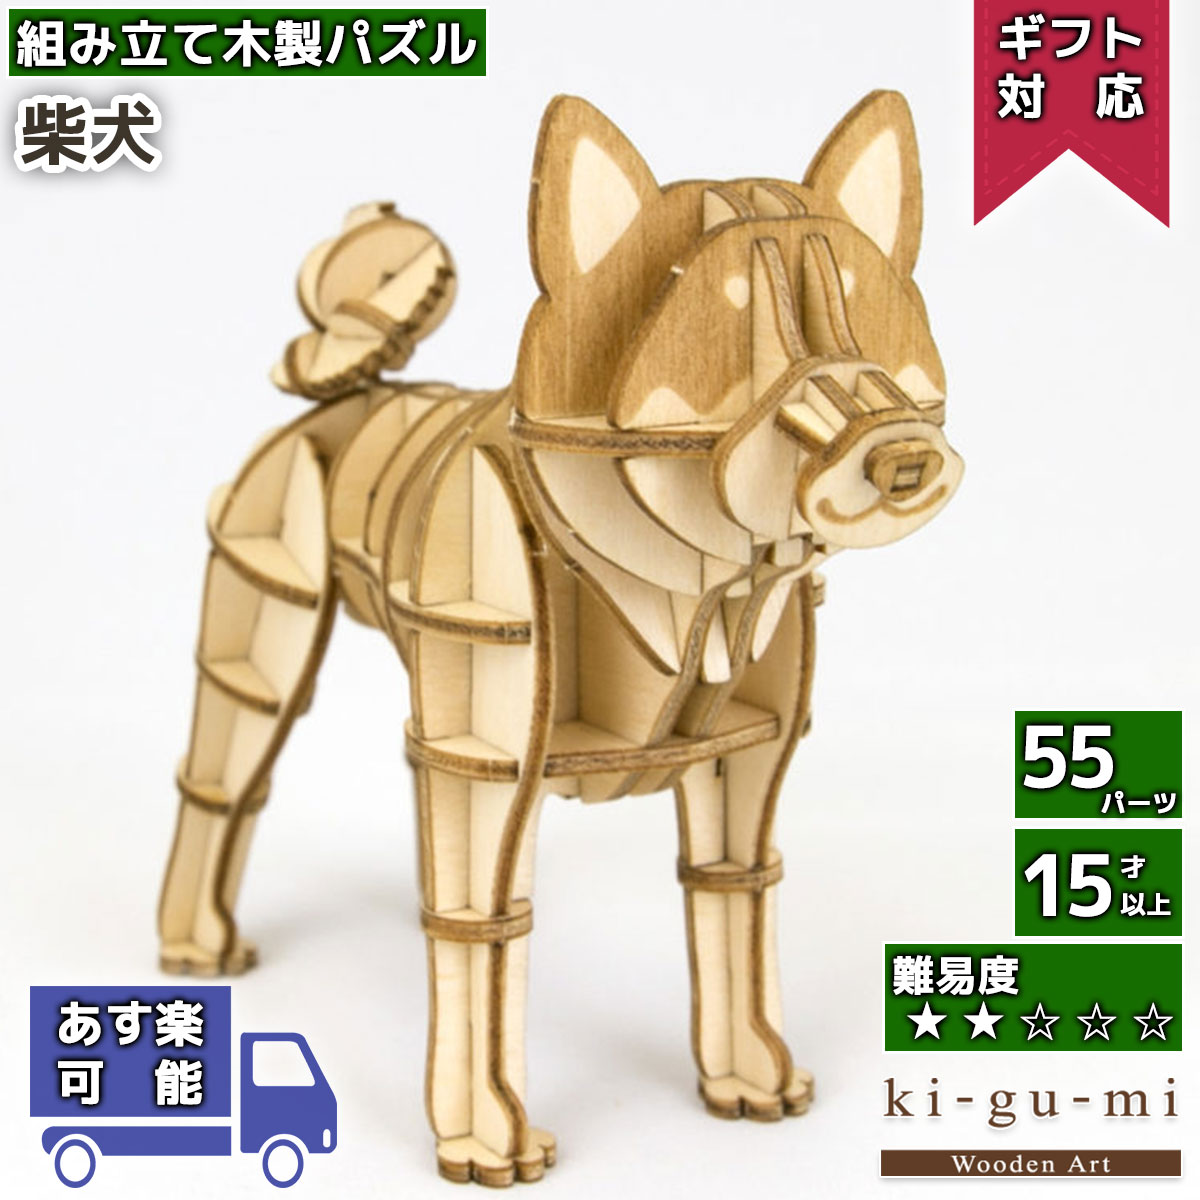 工作キット 柴犬 kigumi エーゾーン ウッドパズル 立体パズル 木製 大人 手作り 自由研究 キット 工作 ホワイトデー お返し